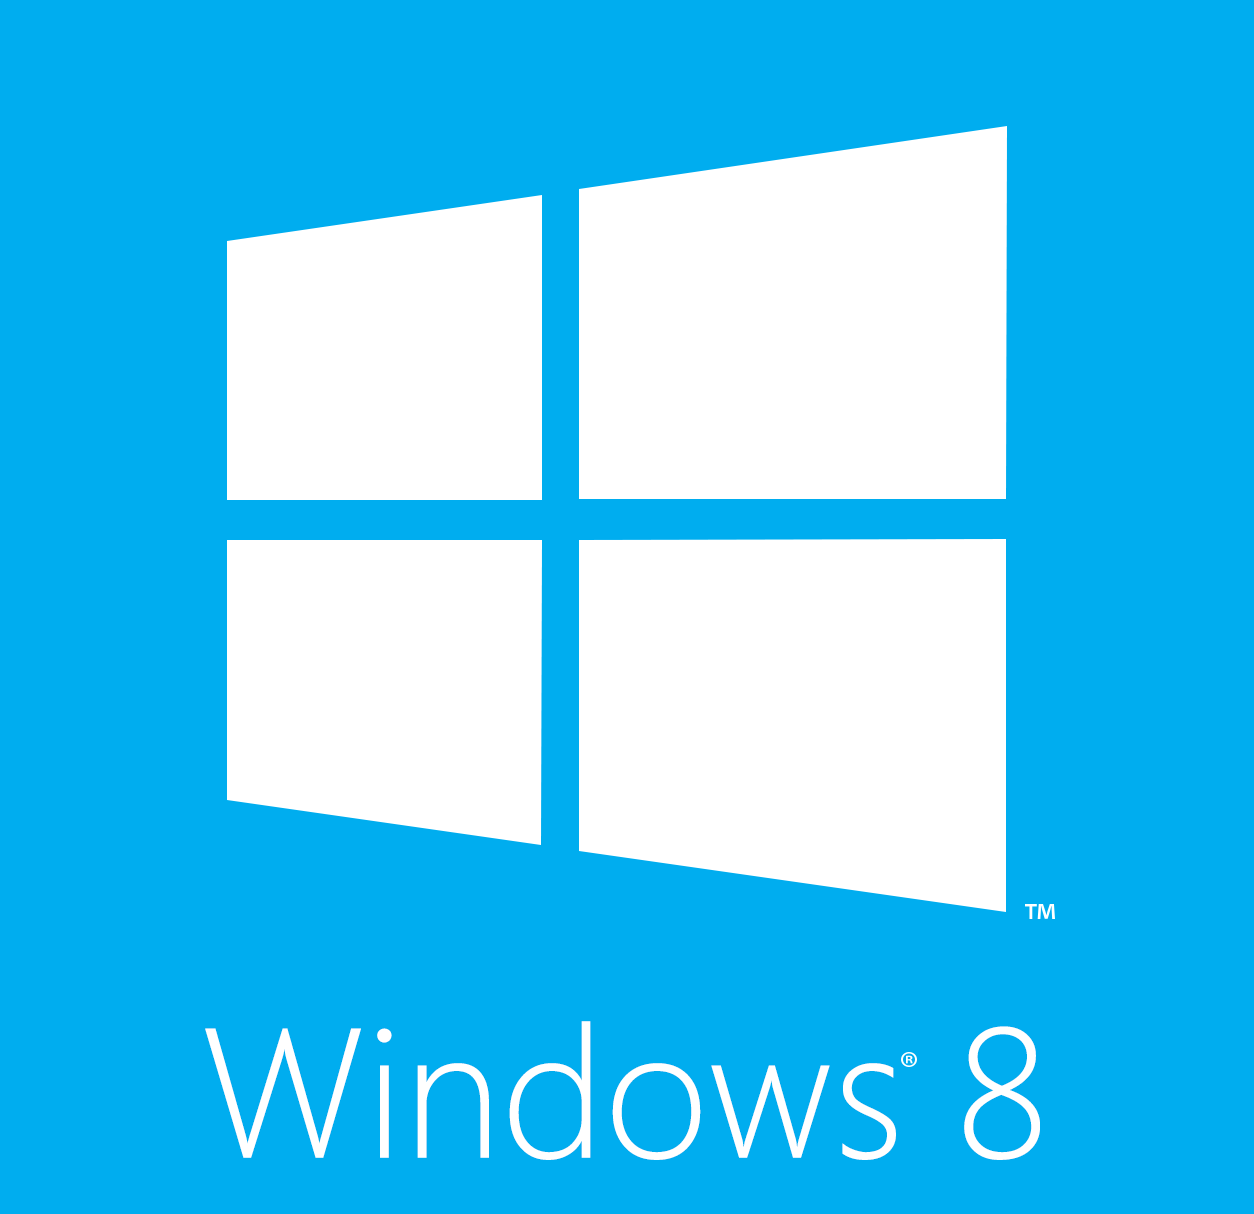 File:Windows-8-logo.png